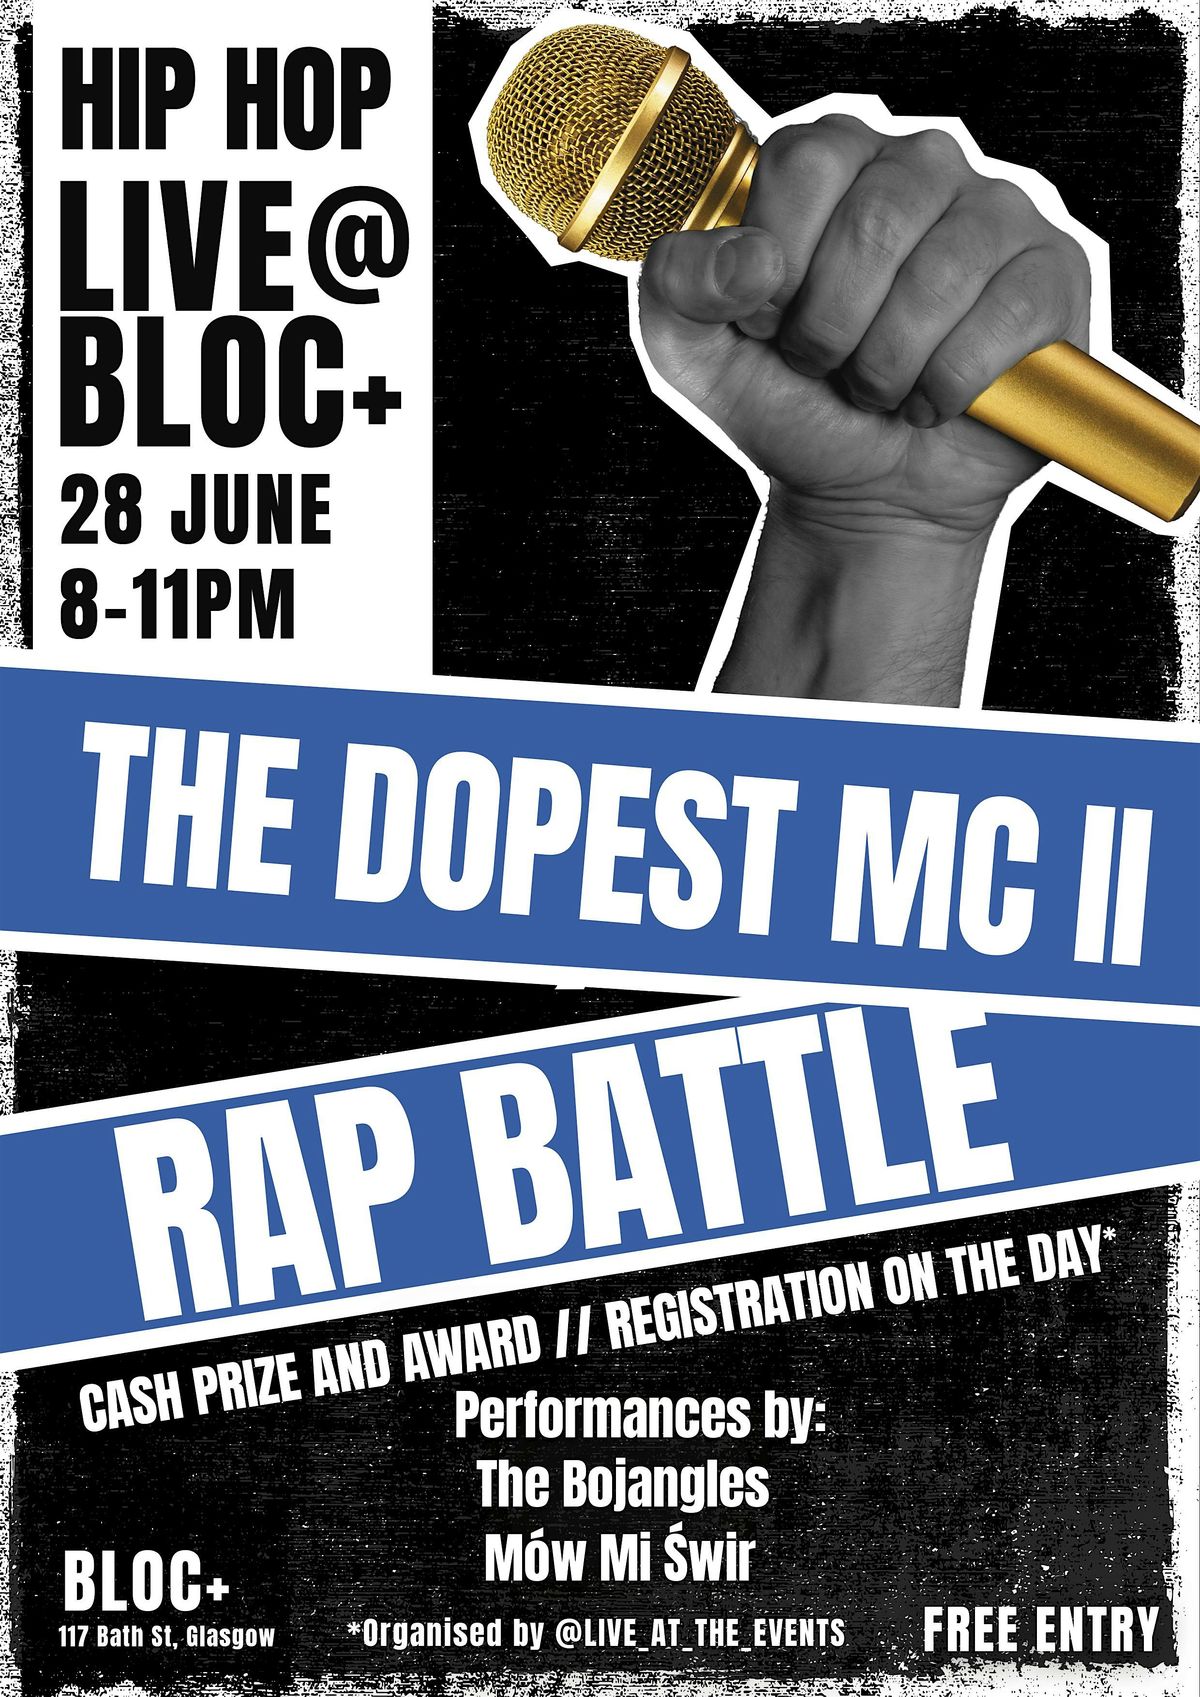 Hip-hop live at bloc - Rap Battle